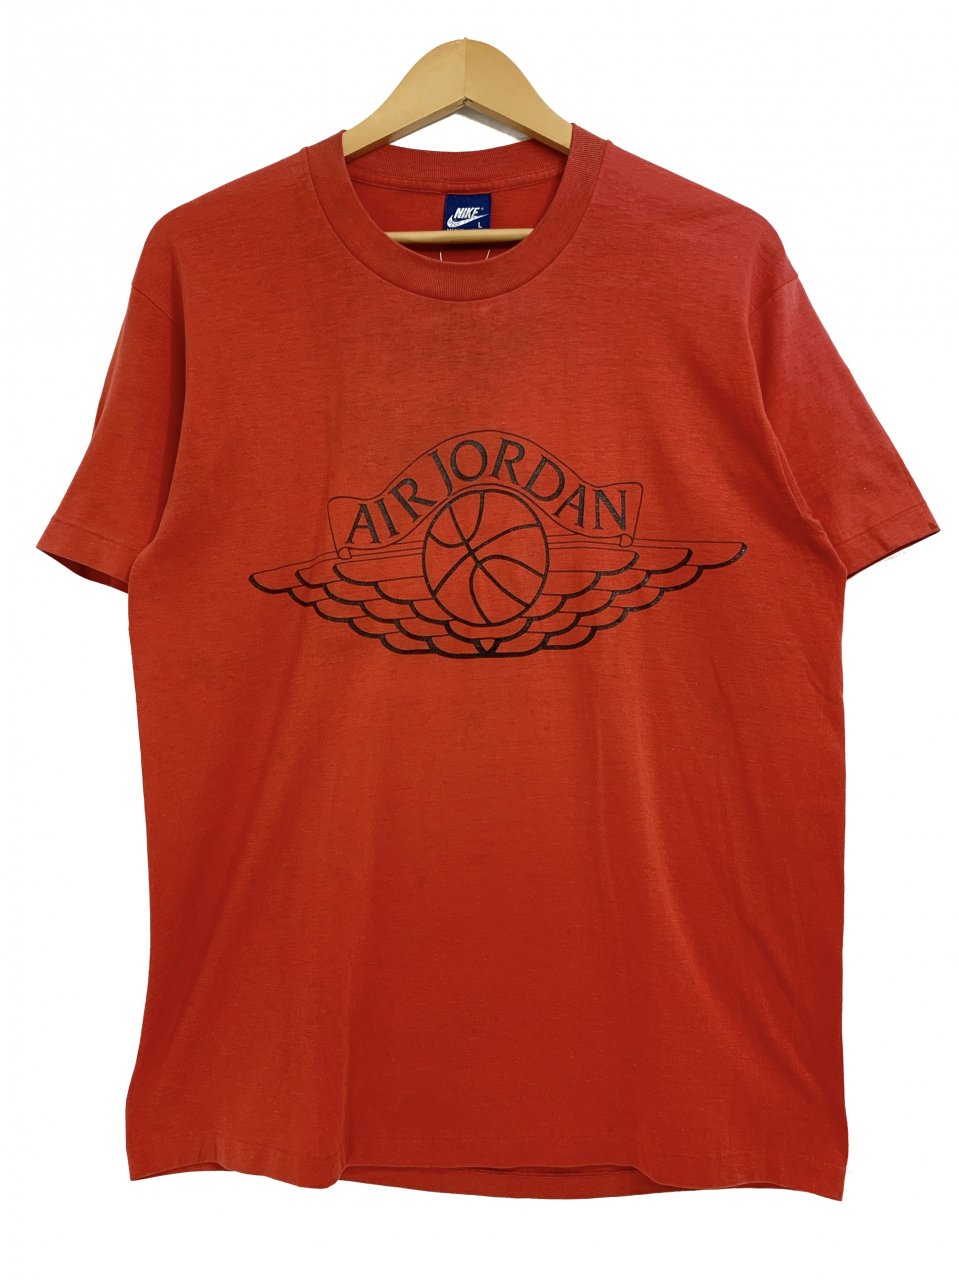 USA製 80s NIKE AIR JORDAN 1 Wing Logo S/S Tee 赤 L 紺タグ ナイキ エアジョーダン1 ウイングロゴ 半袖  Tシャツ レッド - NEWJOKE ONLINE STORE